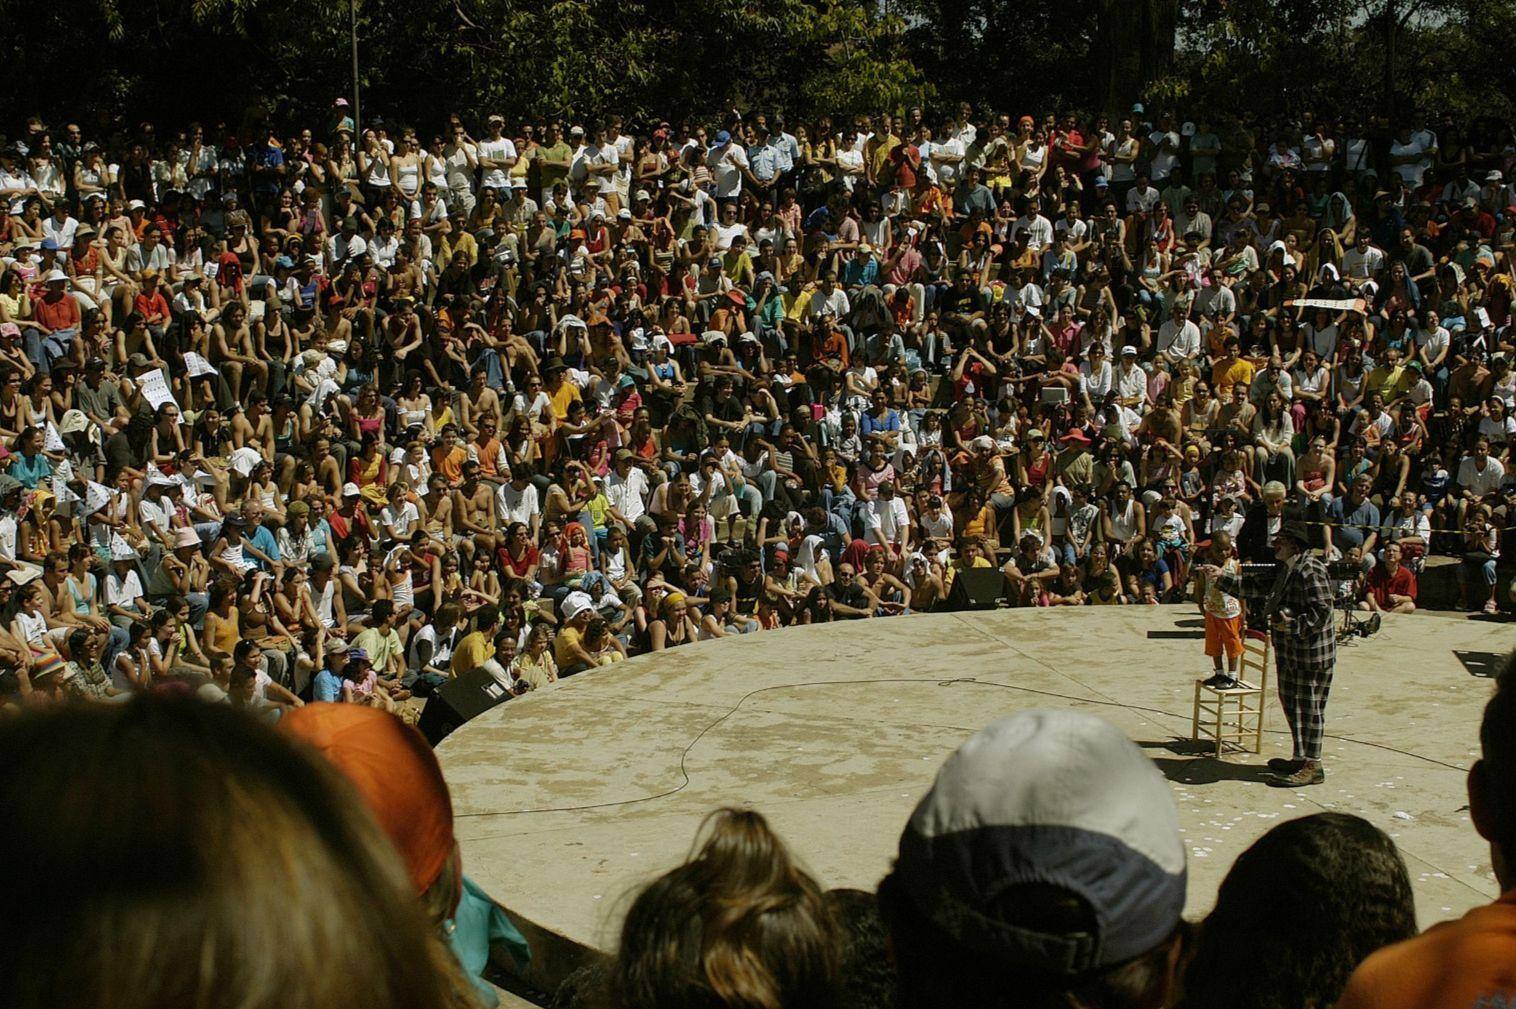 Espetáculo do palhaço espanhol Tortell Poltrona, apresentado em 2008